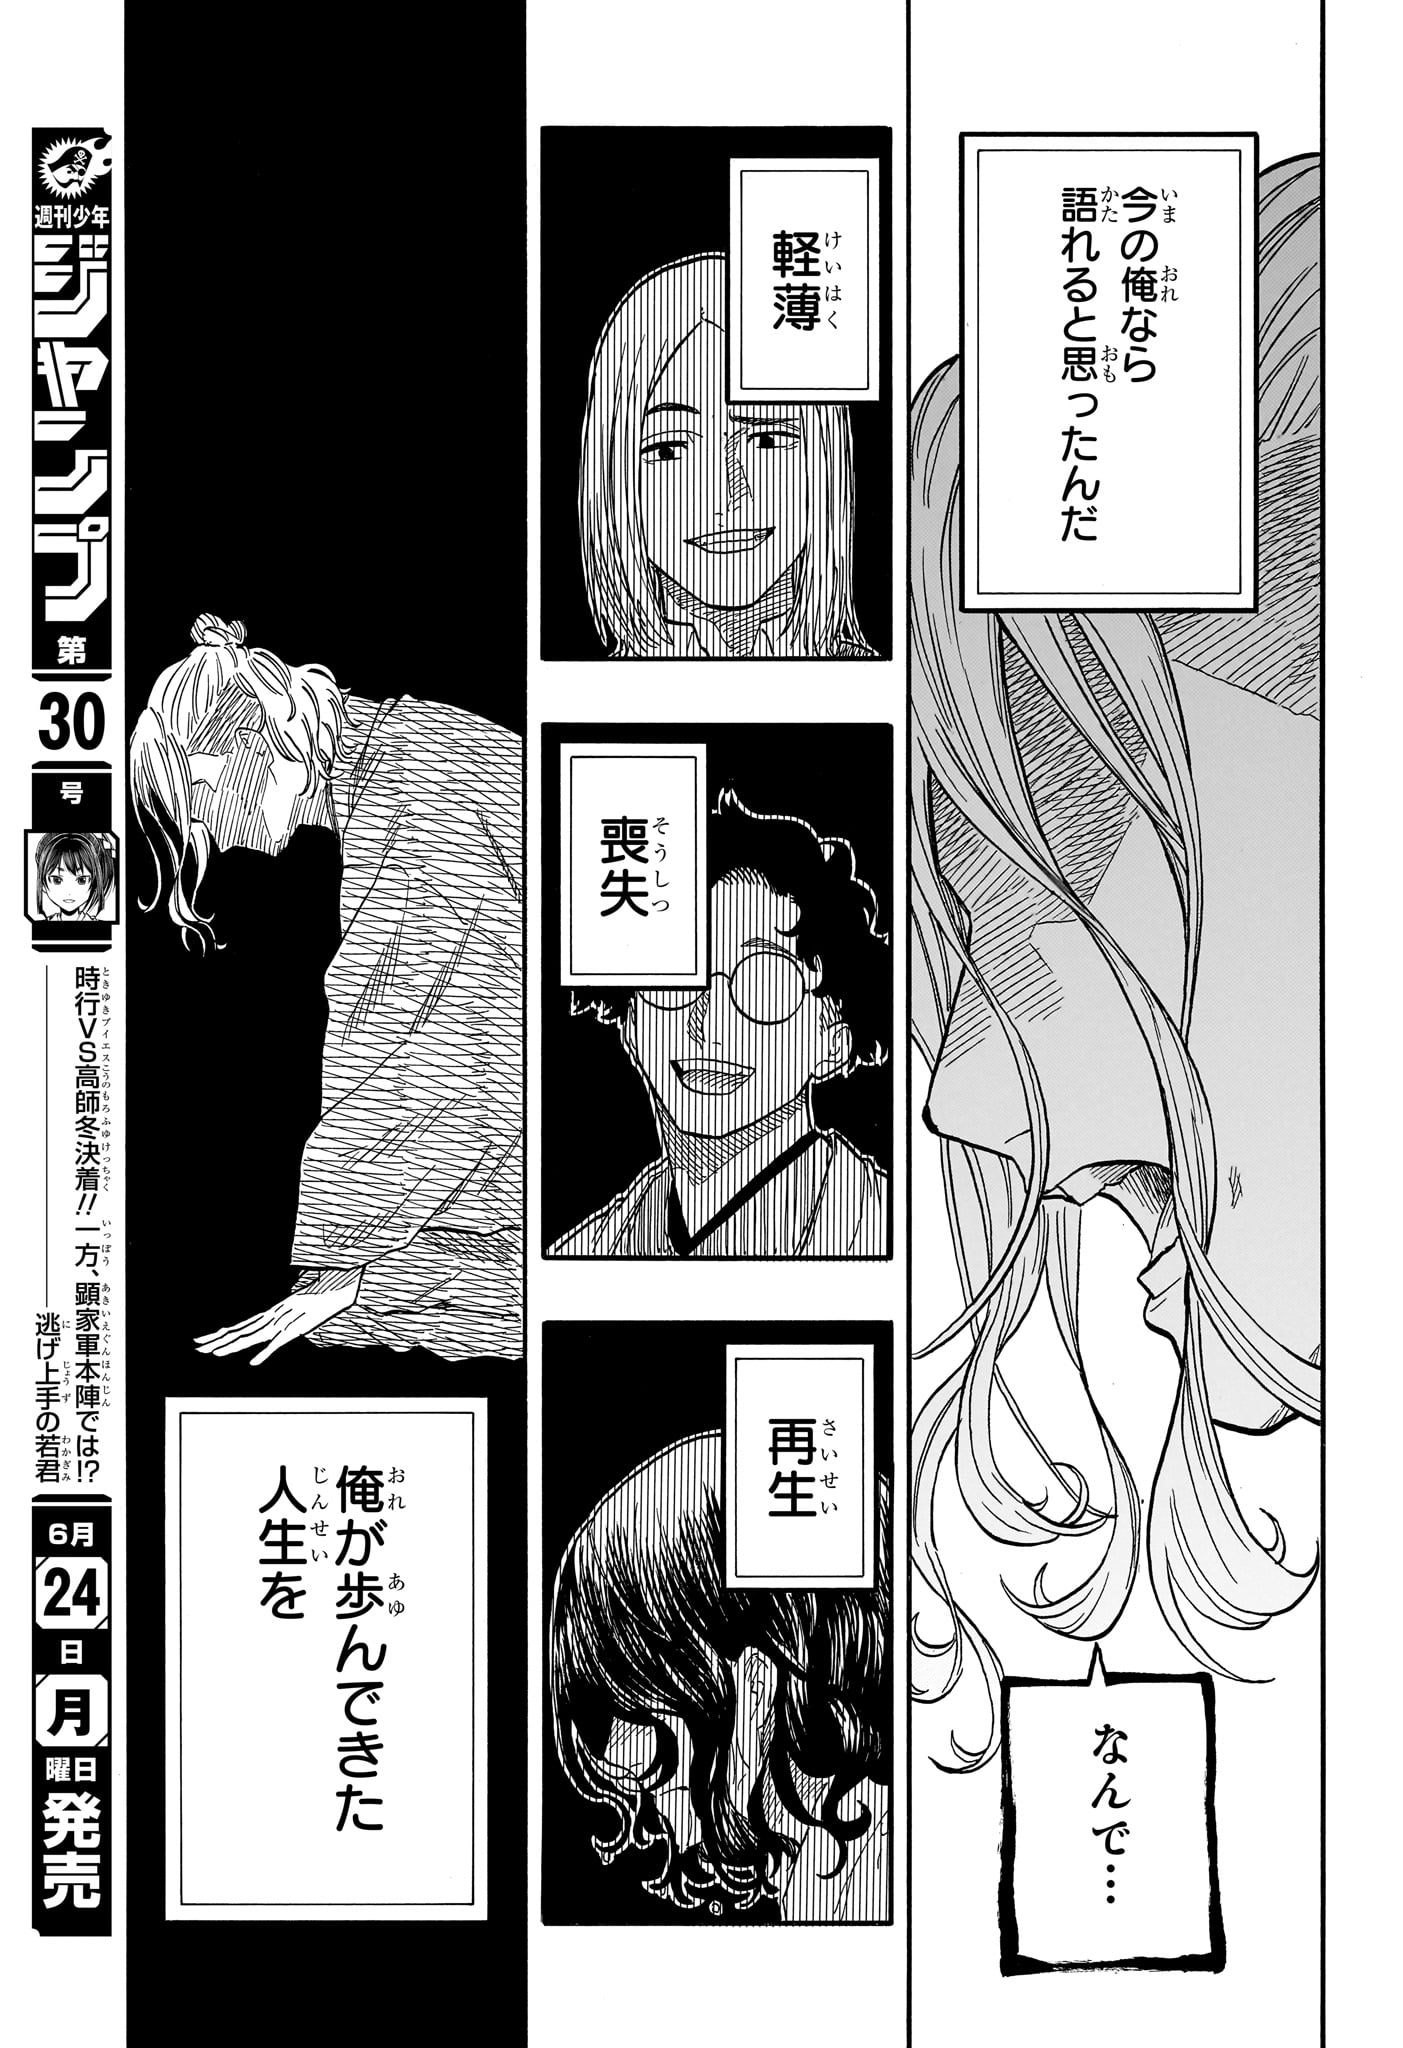 Akane-Banashi - Chapter 114 - Page 15